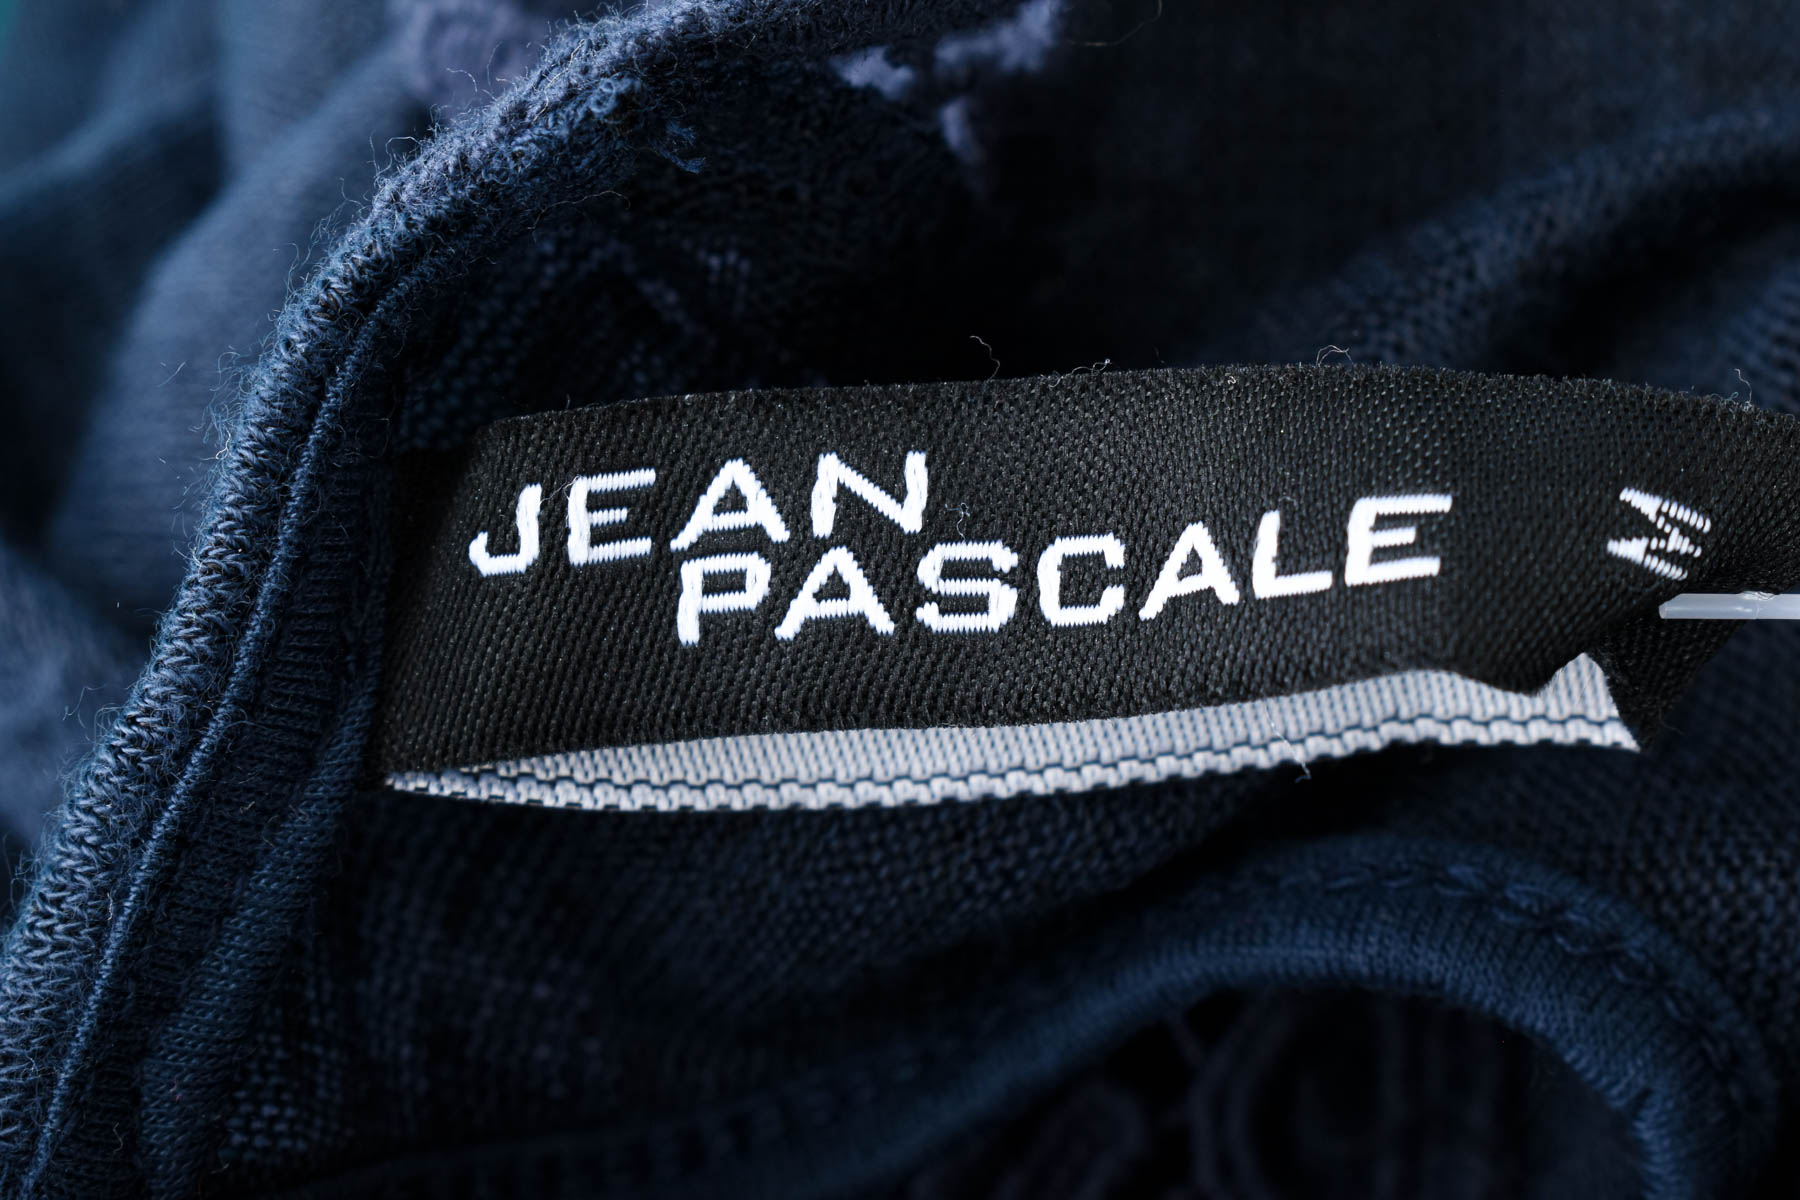 Γυναικείο πουλόβερ - Jean Pascale - 2